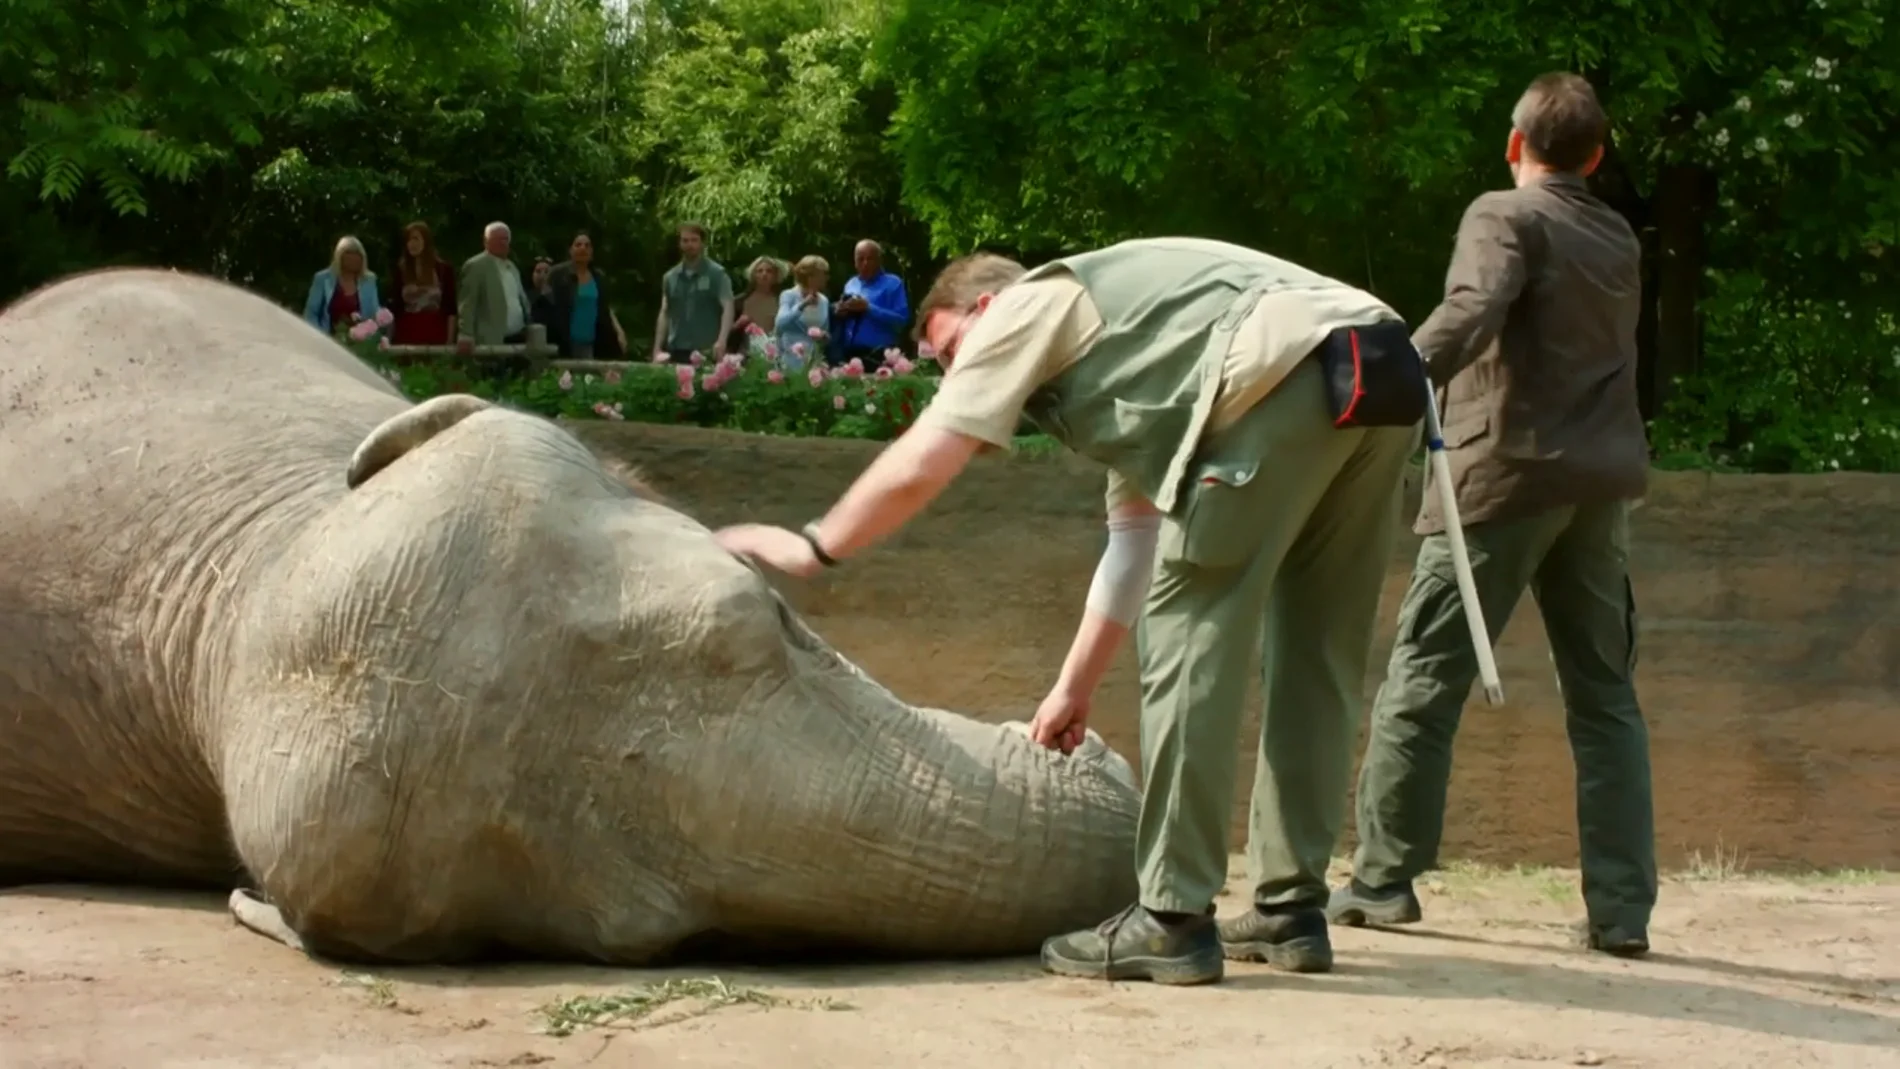 El elefante Trudi, desplomado en el suelo sin saber el motivo